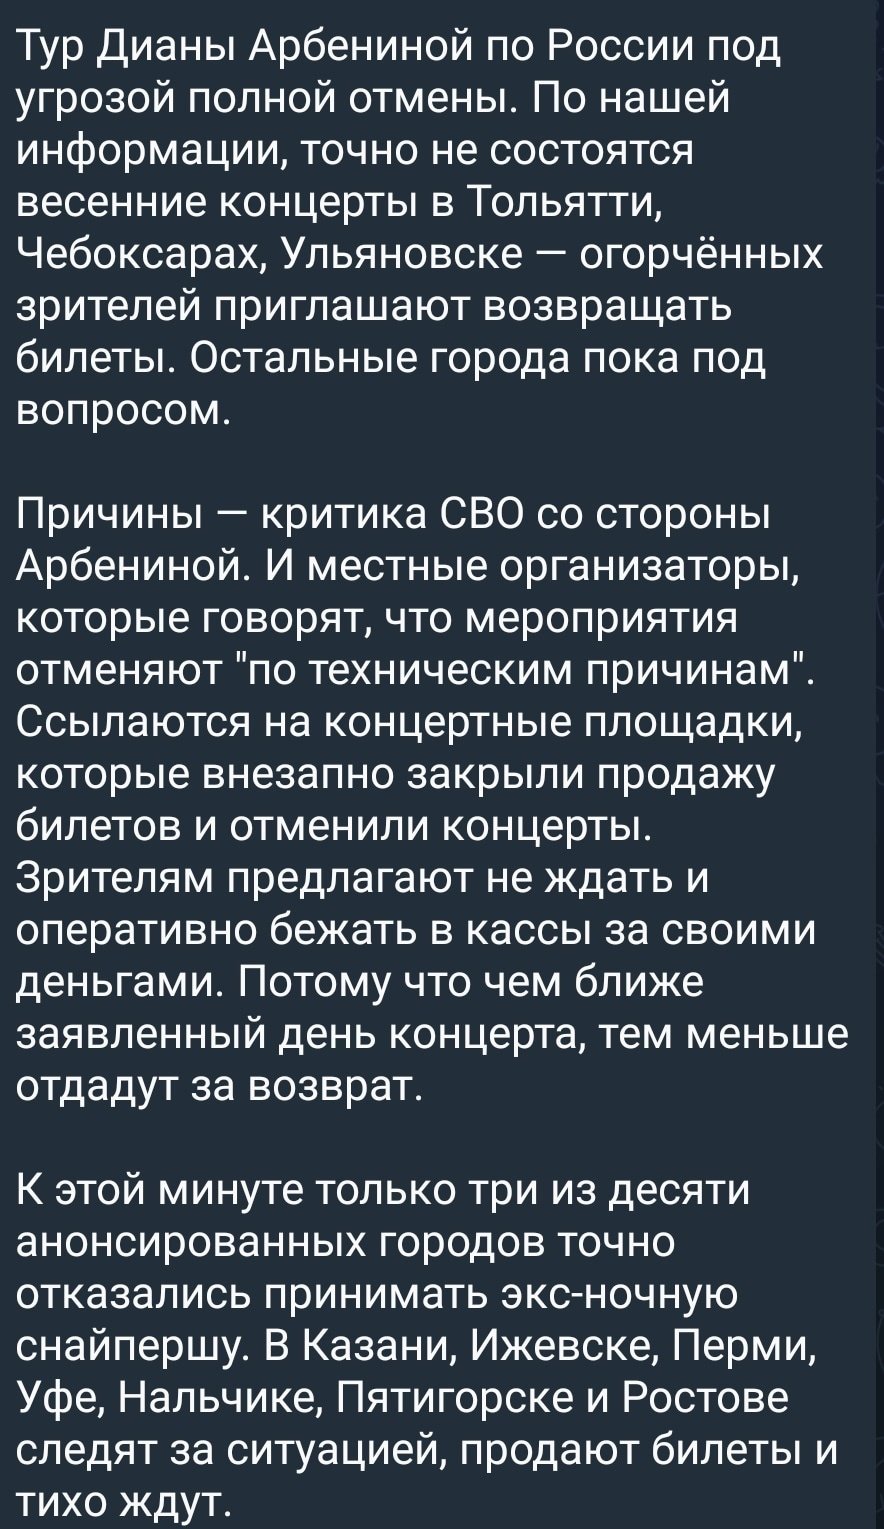 Сити-менеджер Логвиненко прокомментировал перспективы выступления группы “Ночные снайперы” в Ростове